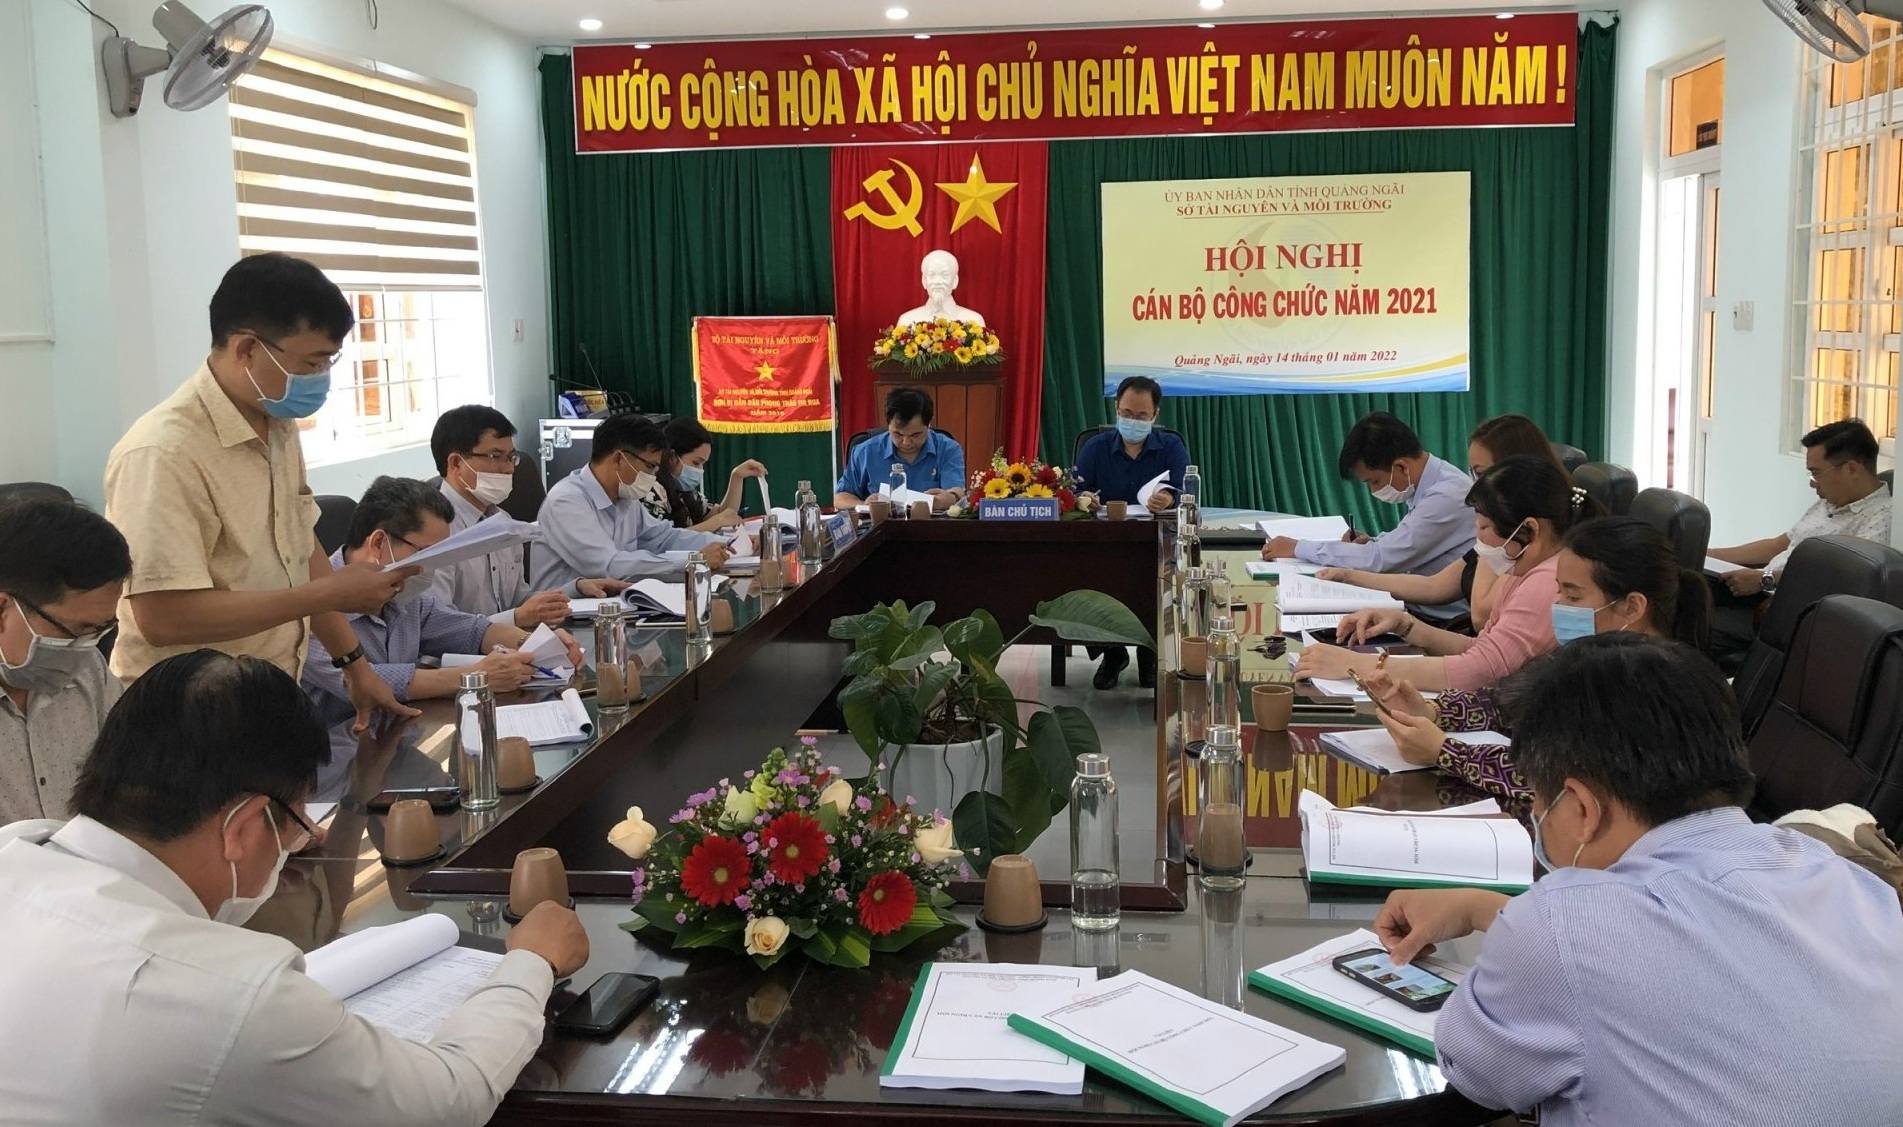 Sở Tài nguyên và Môi trường tỉnh Quảng Ngãi tổ chức Hội nghị cán bộ công chức năm 2021